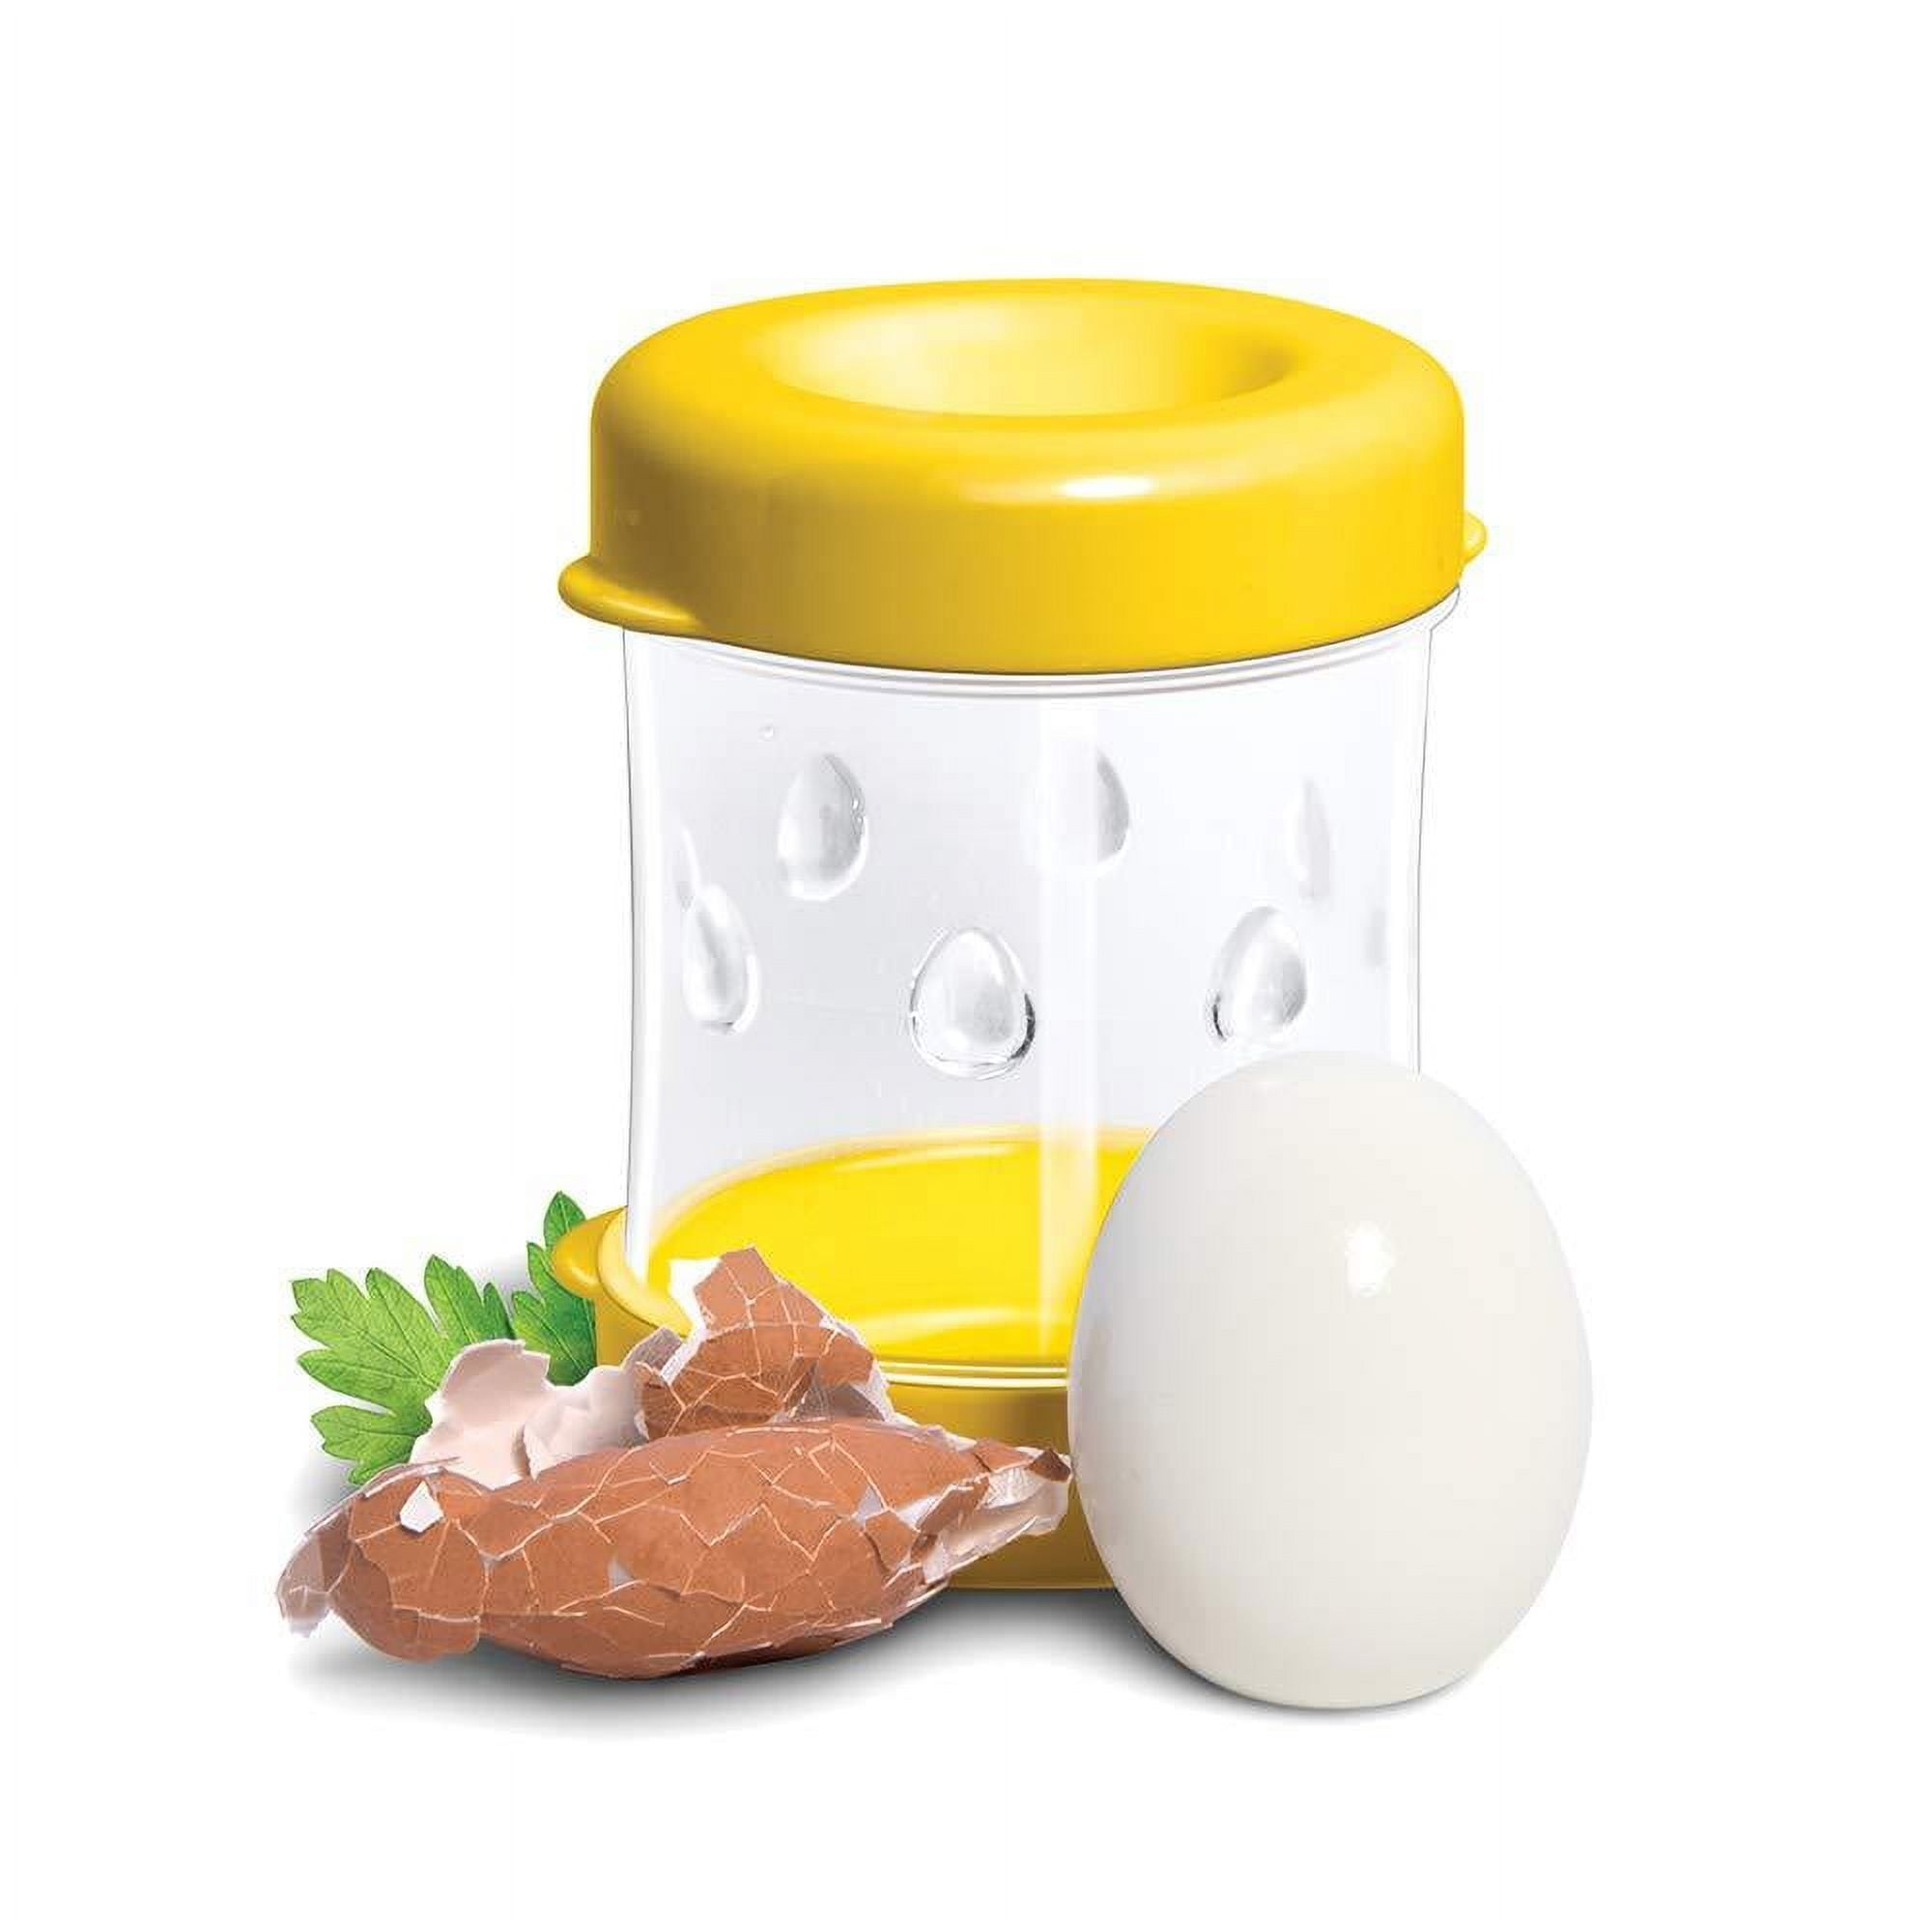 Hsn The Negg 2-Pack Hard-Boiled Egg Peeler - Black